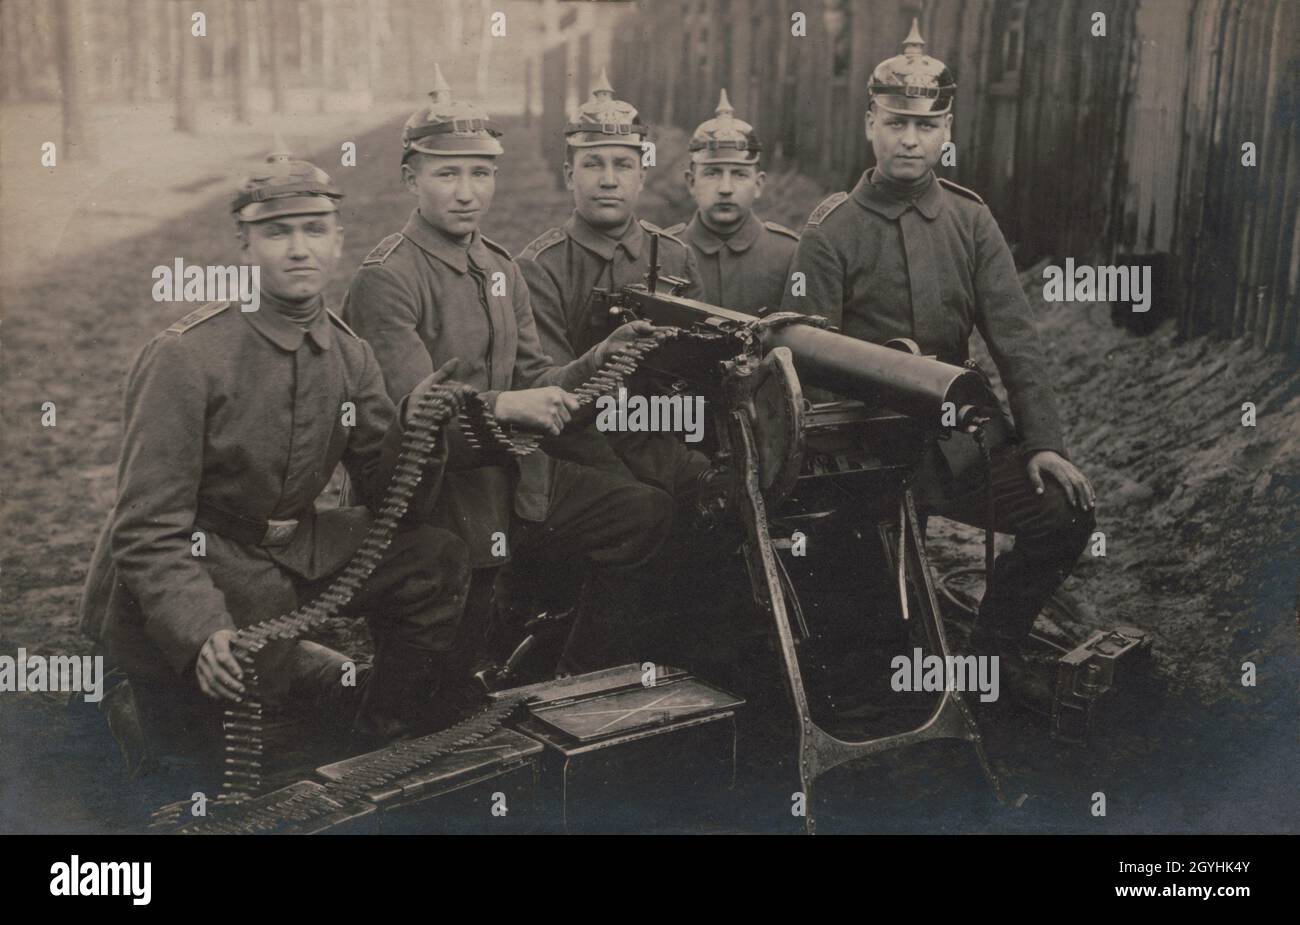 Una foto vintage de alrededor de 1918 soldados alemanes posando con una ametralladora Maschinengewehr 08 con cascos distintivos Pickelhaube o Pickelhelm Foto de stock